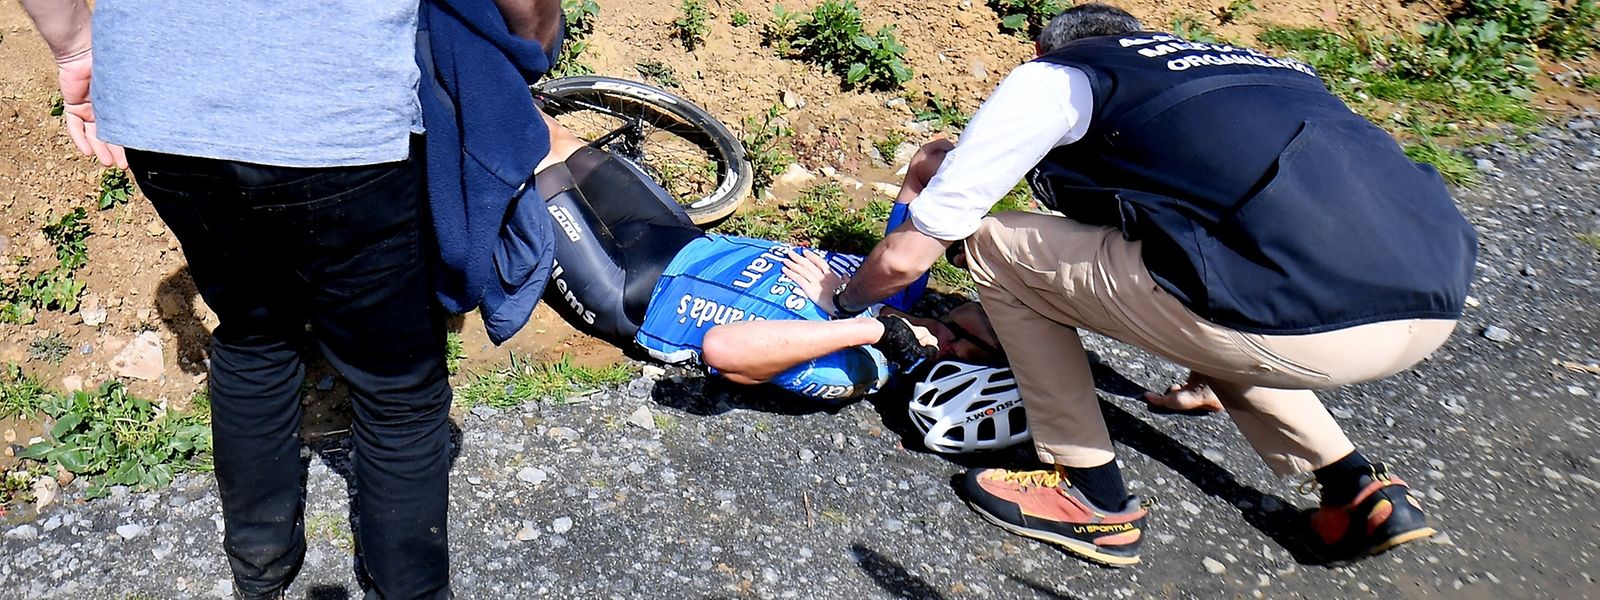 Der belgische Radprofi Michael Goolaerts brach bei Paris-Roubaix zusammen.